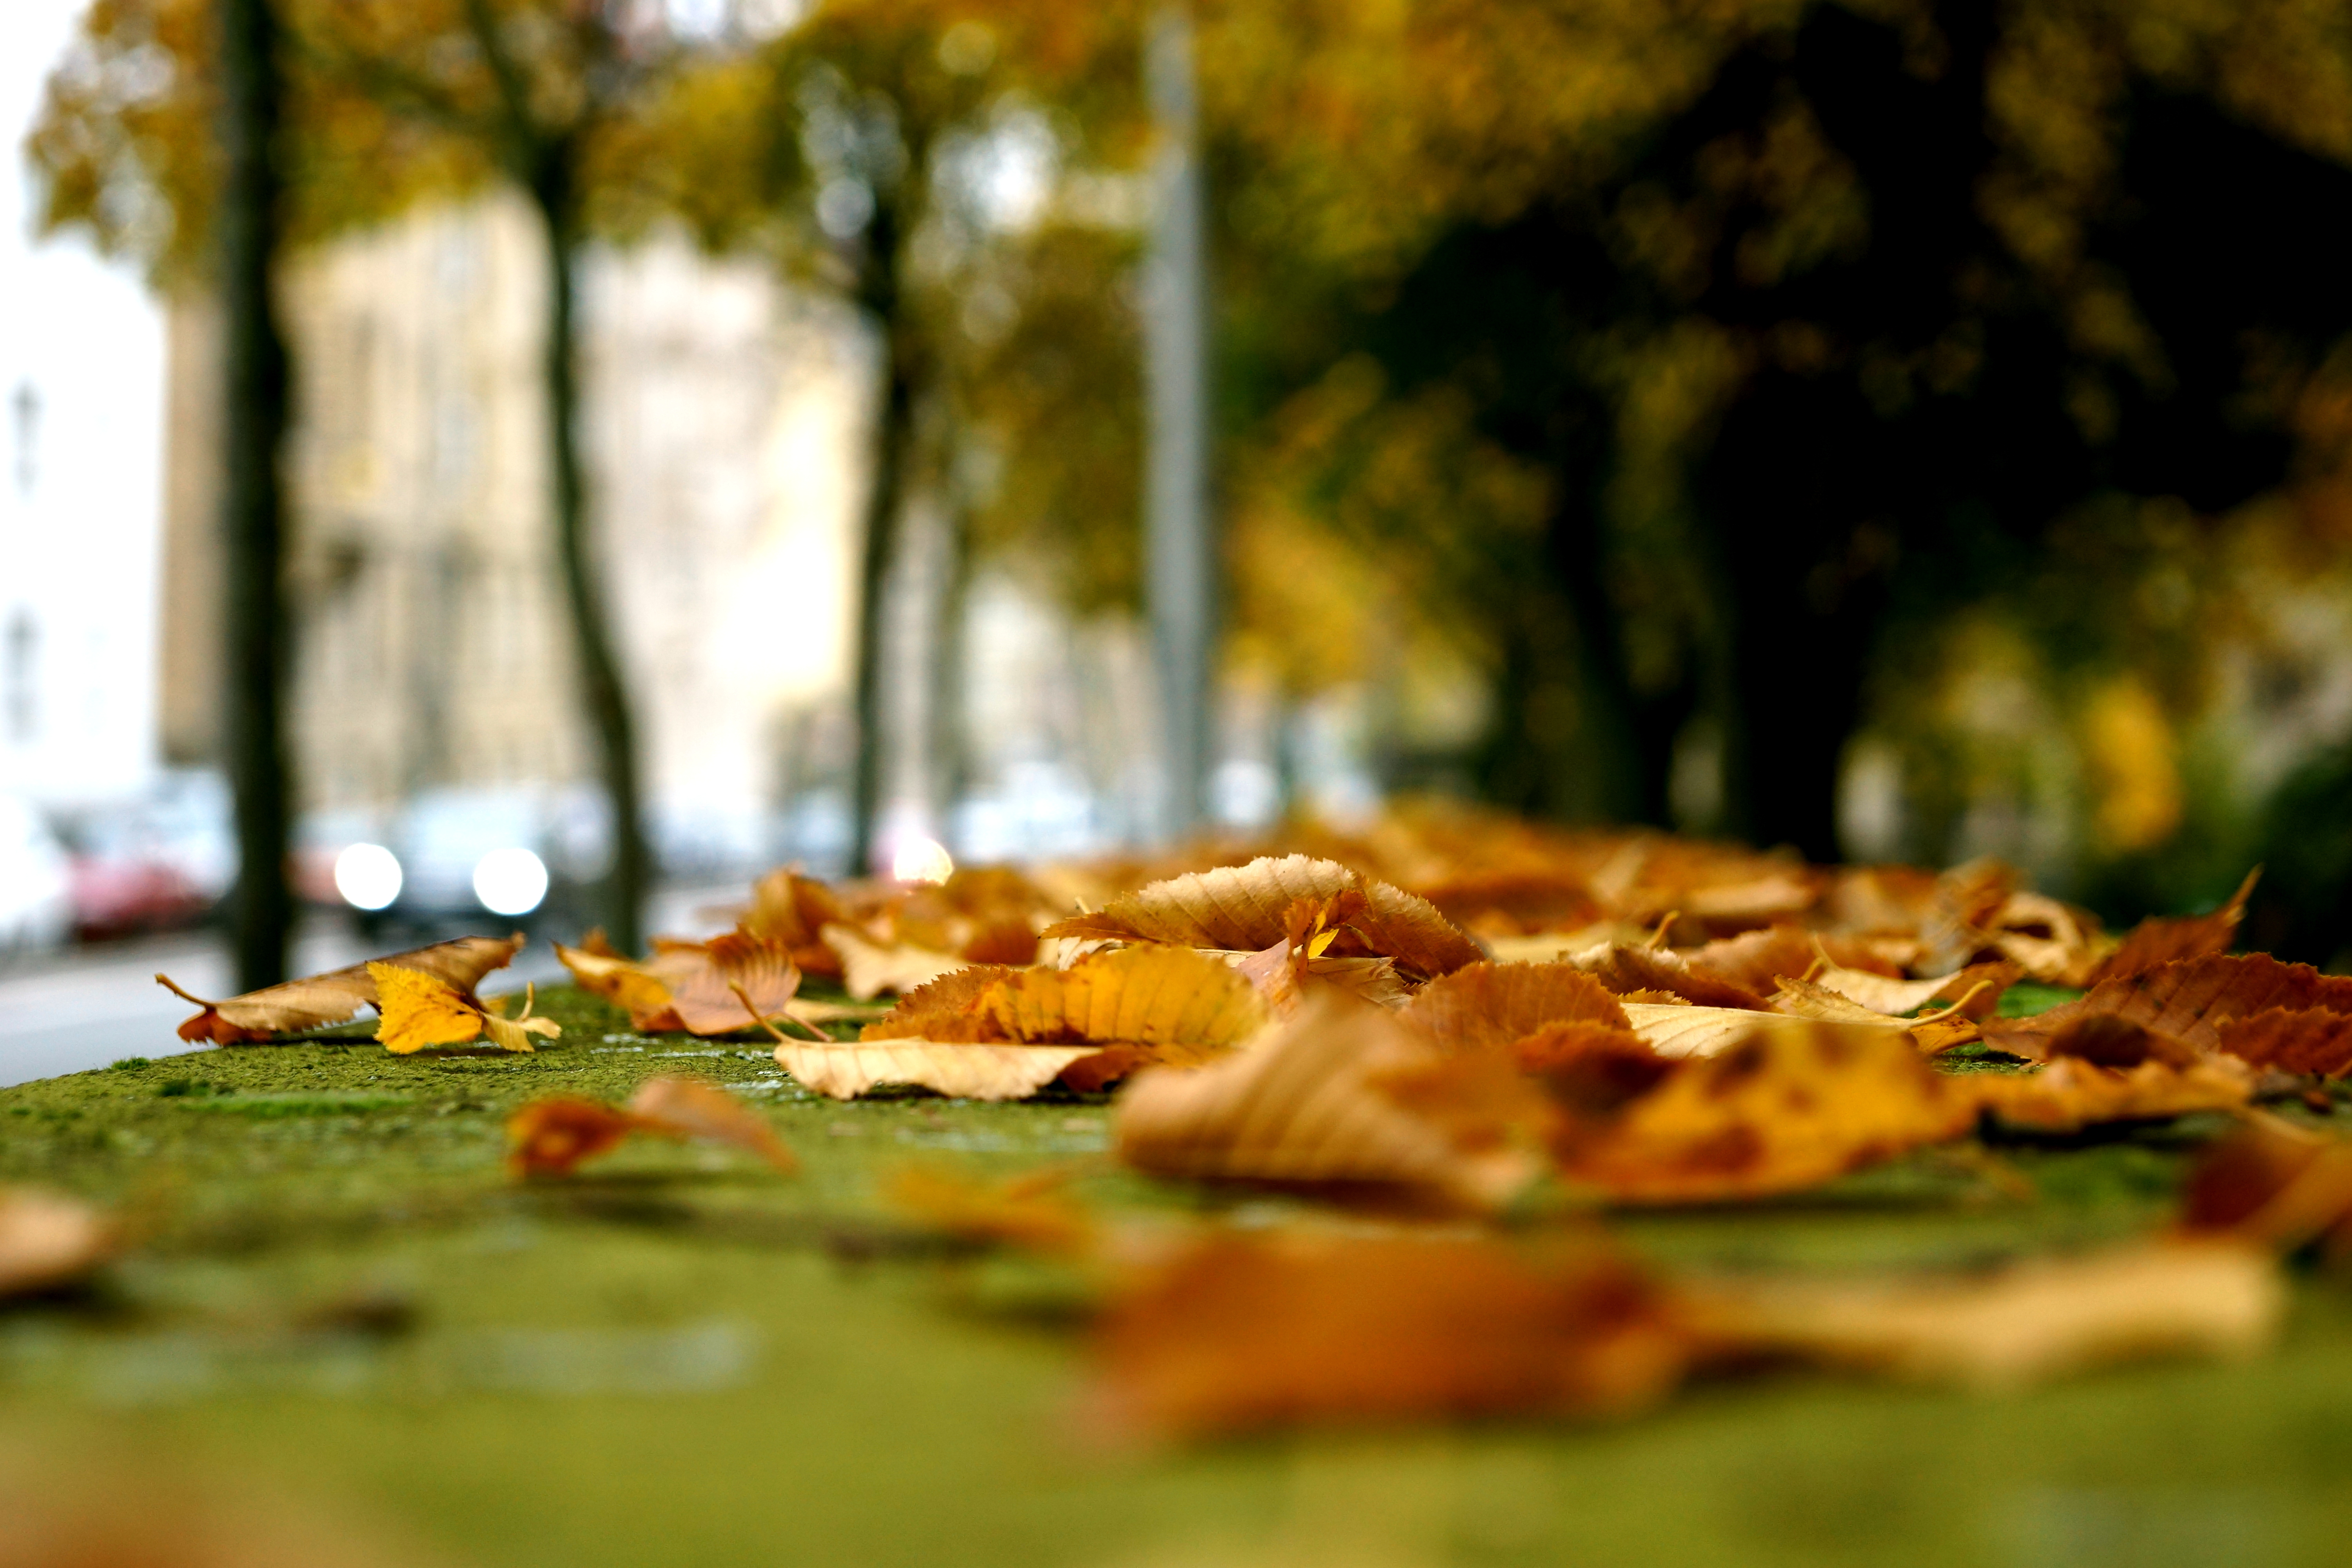 Fall used. Autumn Falls. Patio Fallen leaves. Fallen autumn leaves. Autumn Falls Wiki.